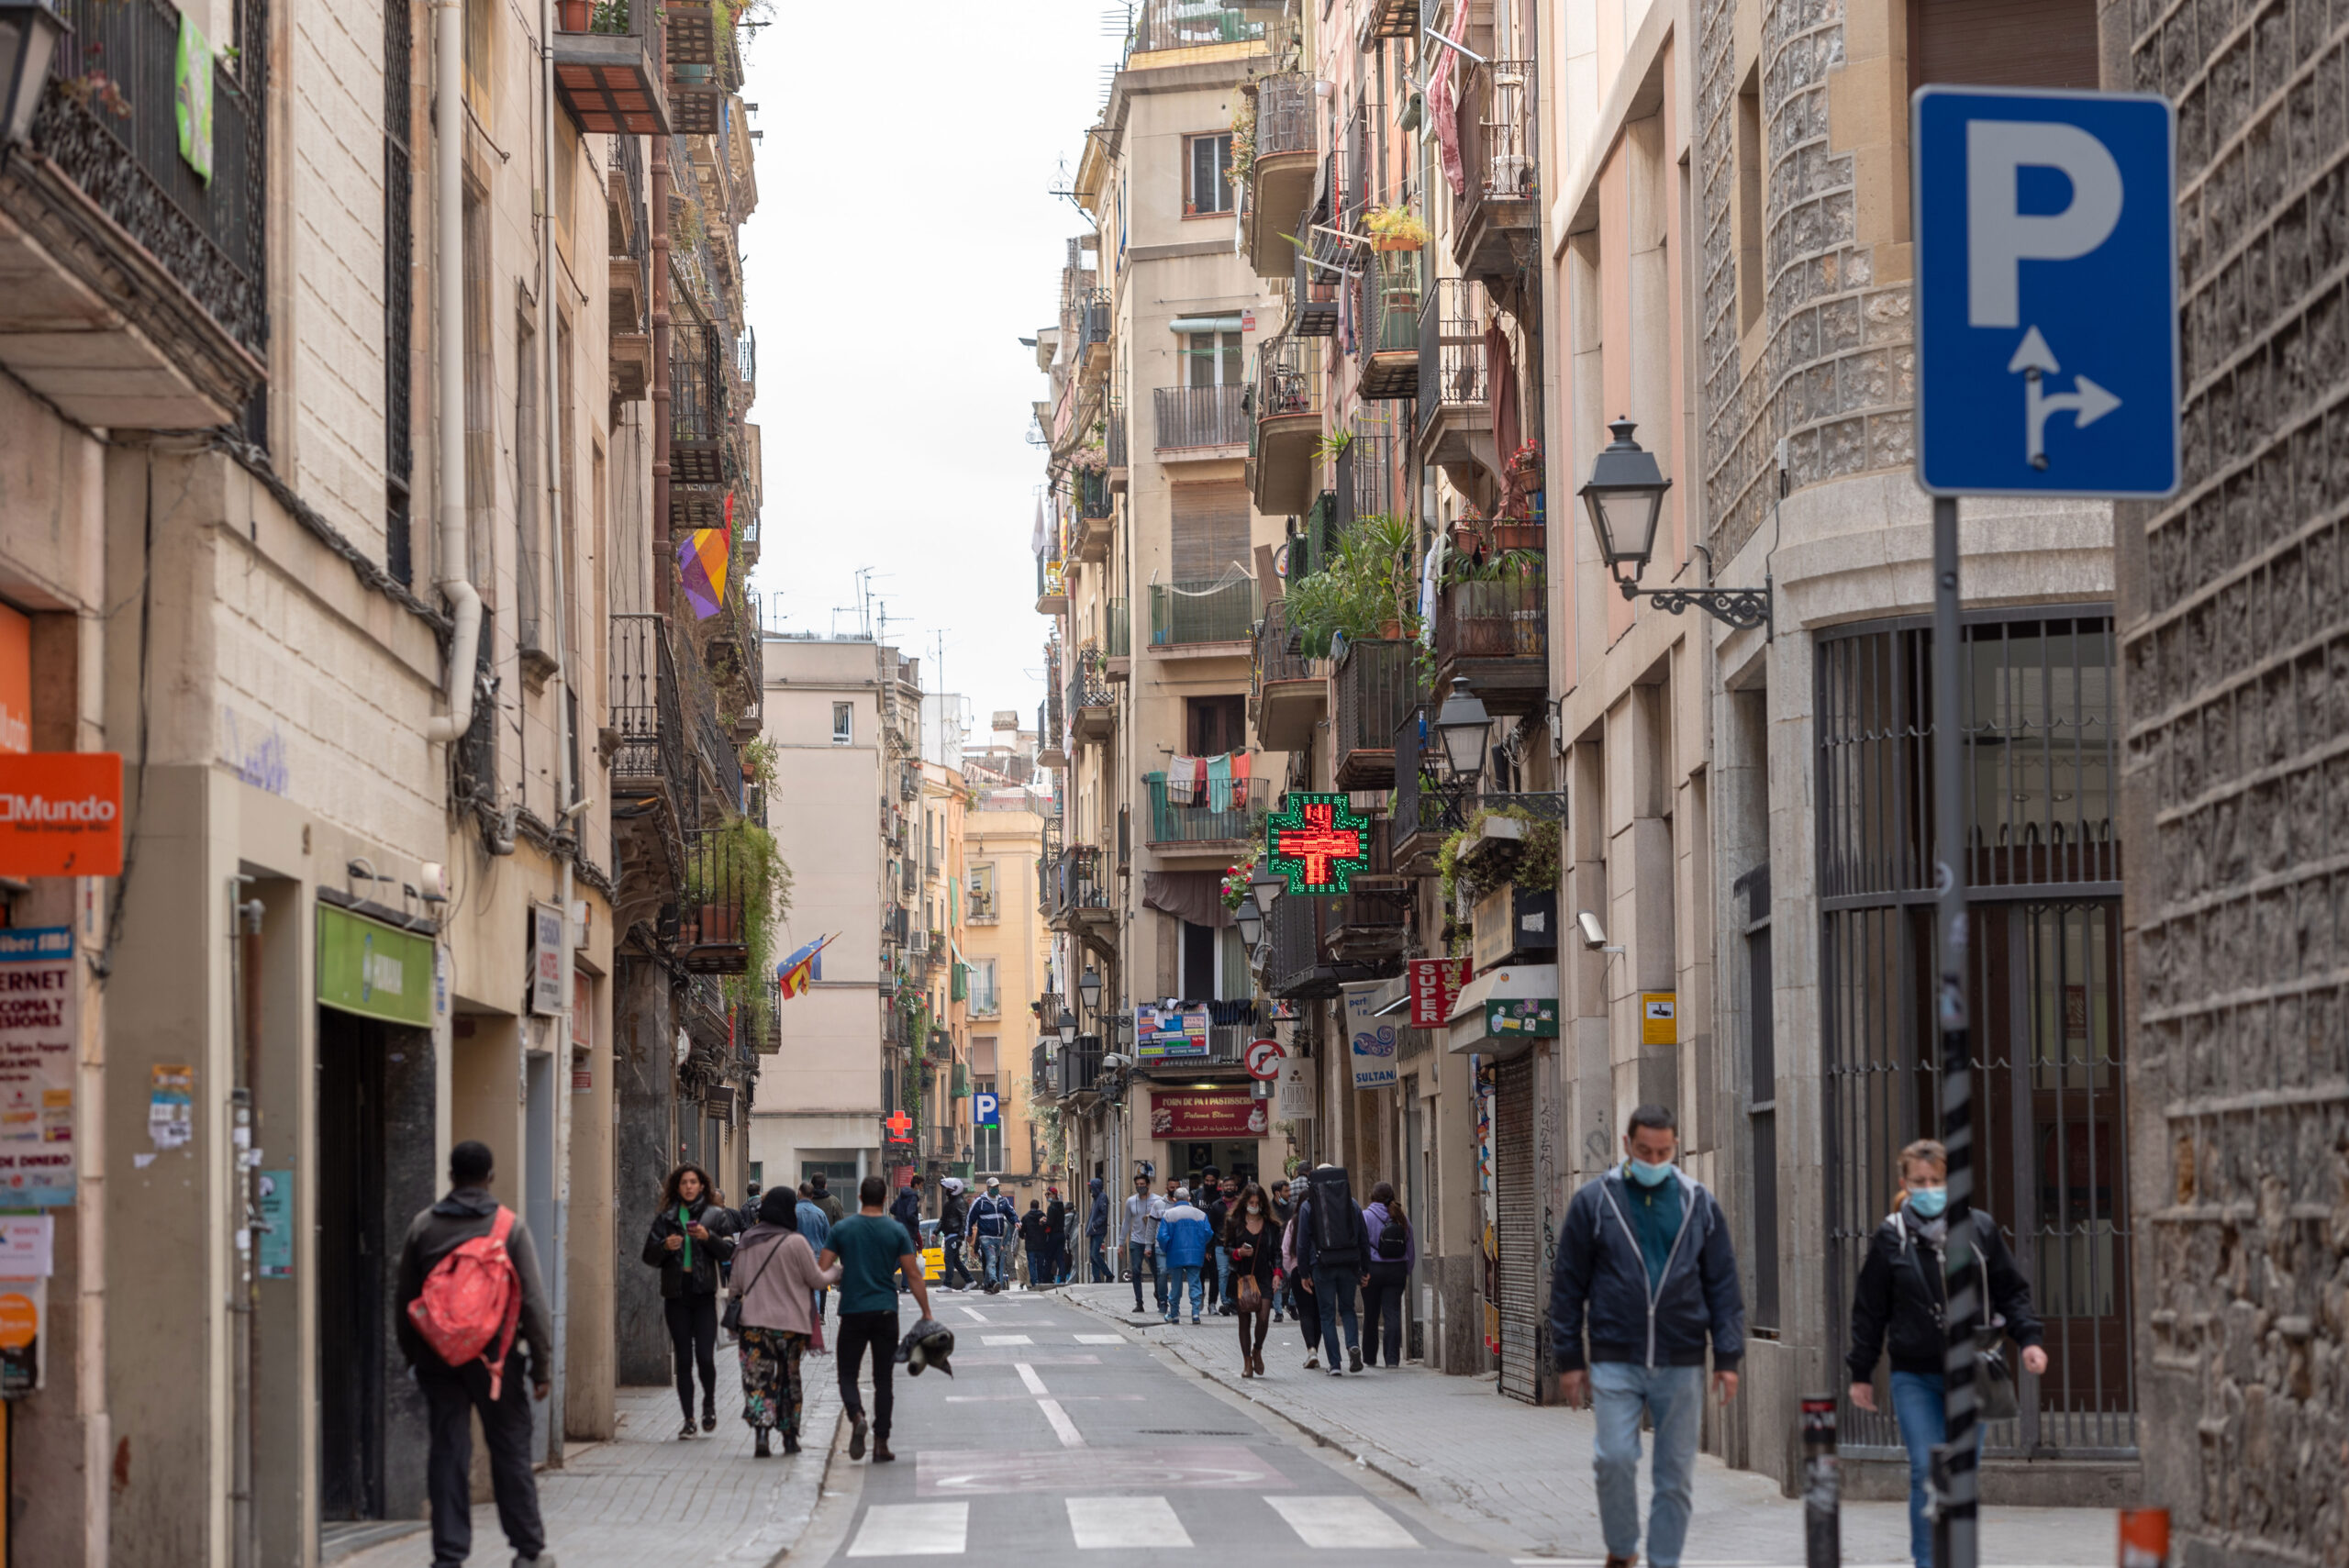 El Raval i Barcelona: anbefalede områder og bydele